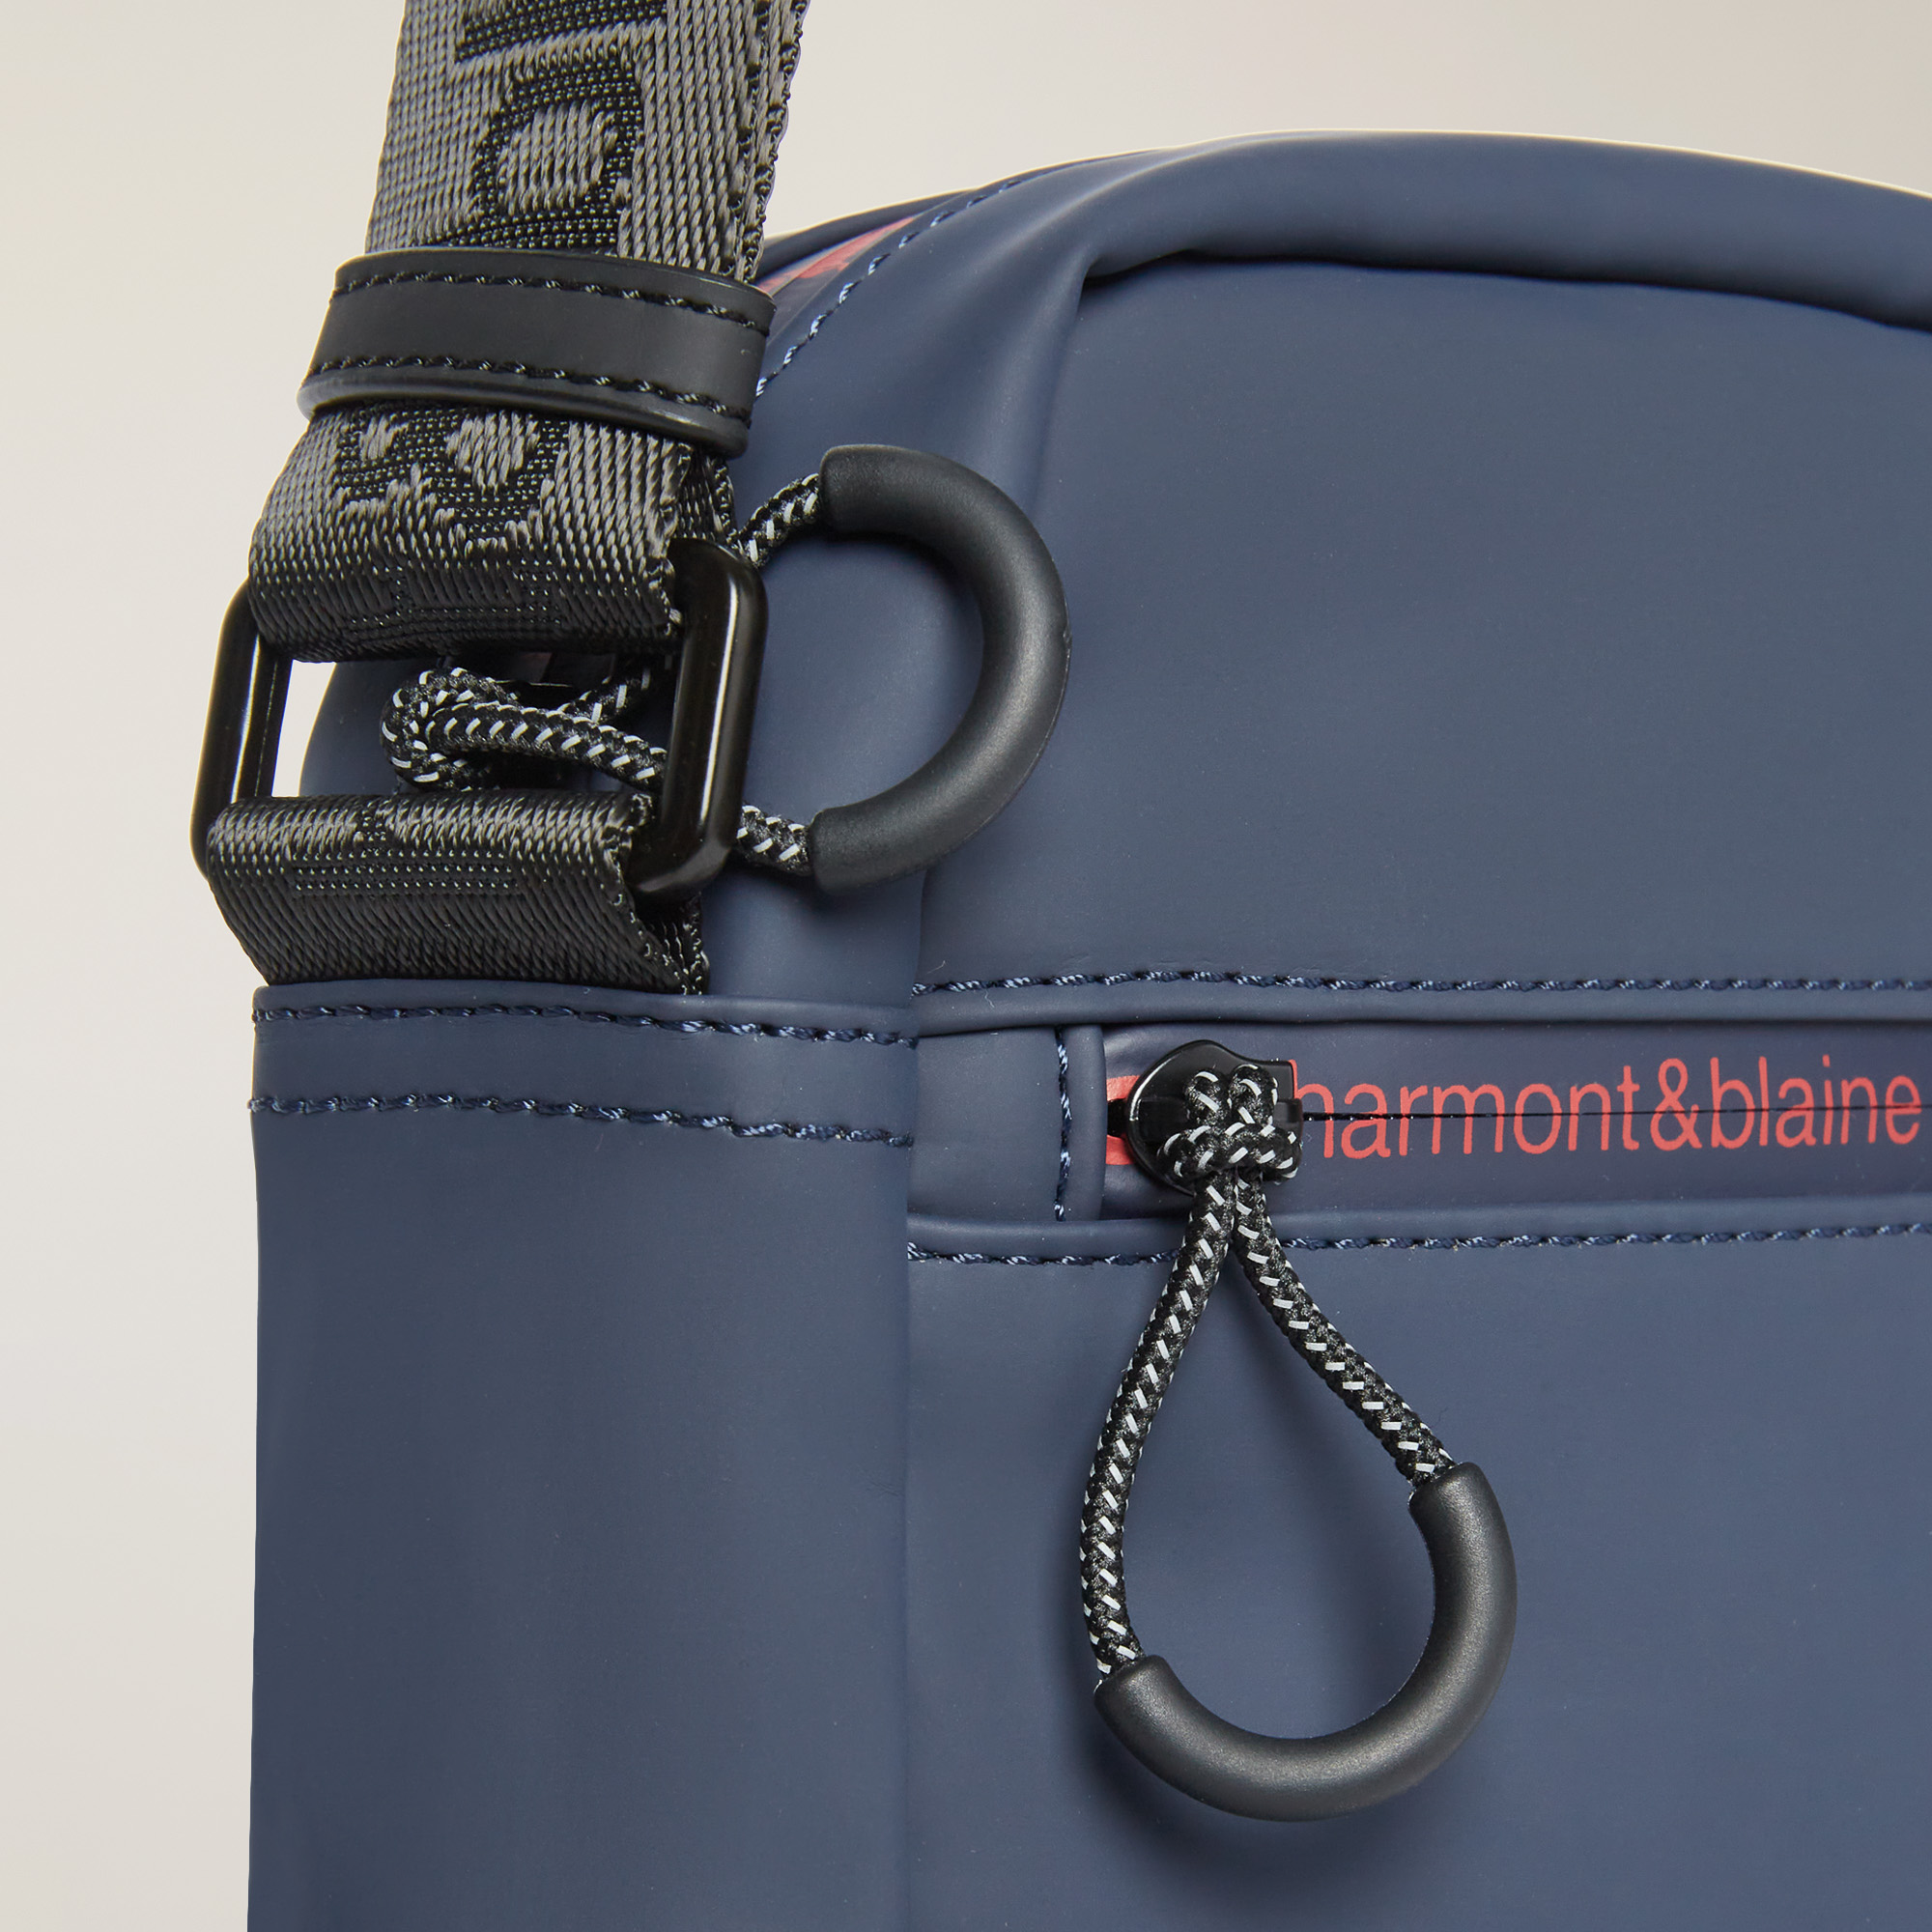 Reporter Bag With Branded Details, Blue, large image number 2